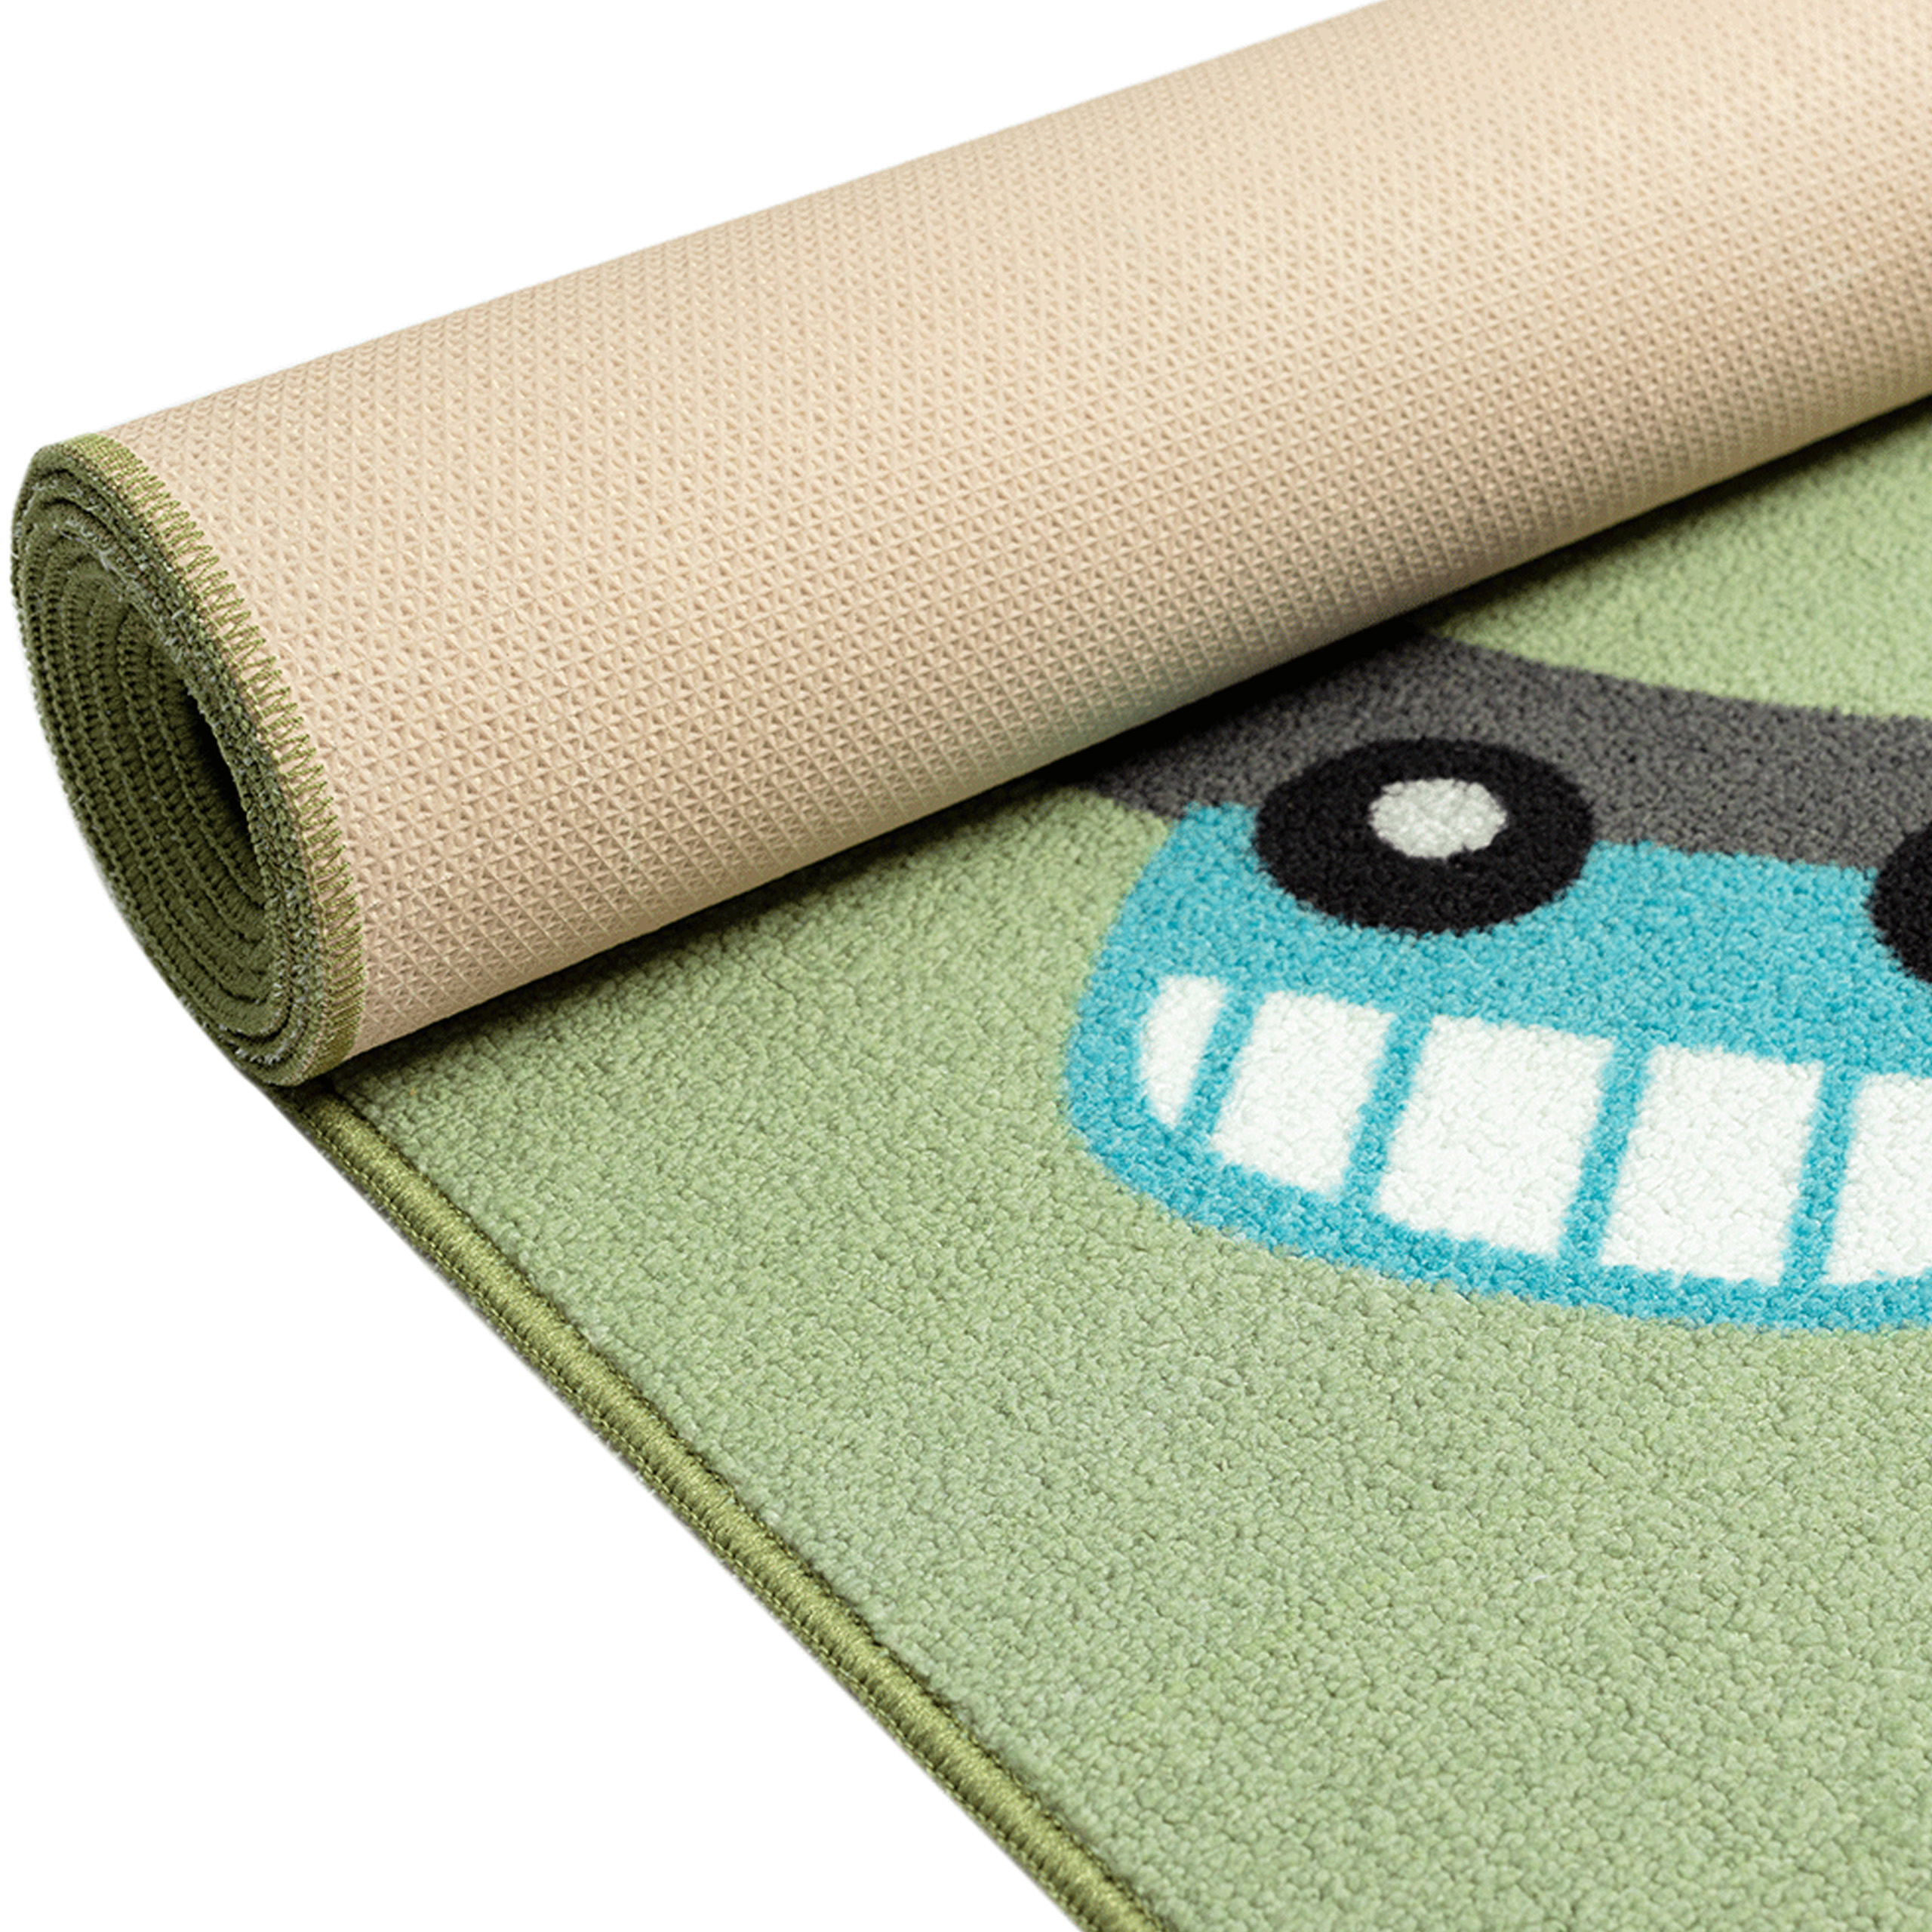 Kaufe Neue Cartoon Naruto Teppiche Kinder Krabbeln Teppiche